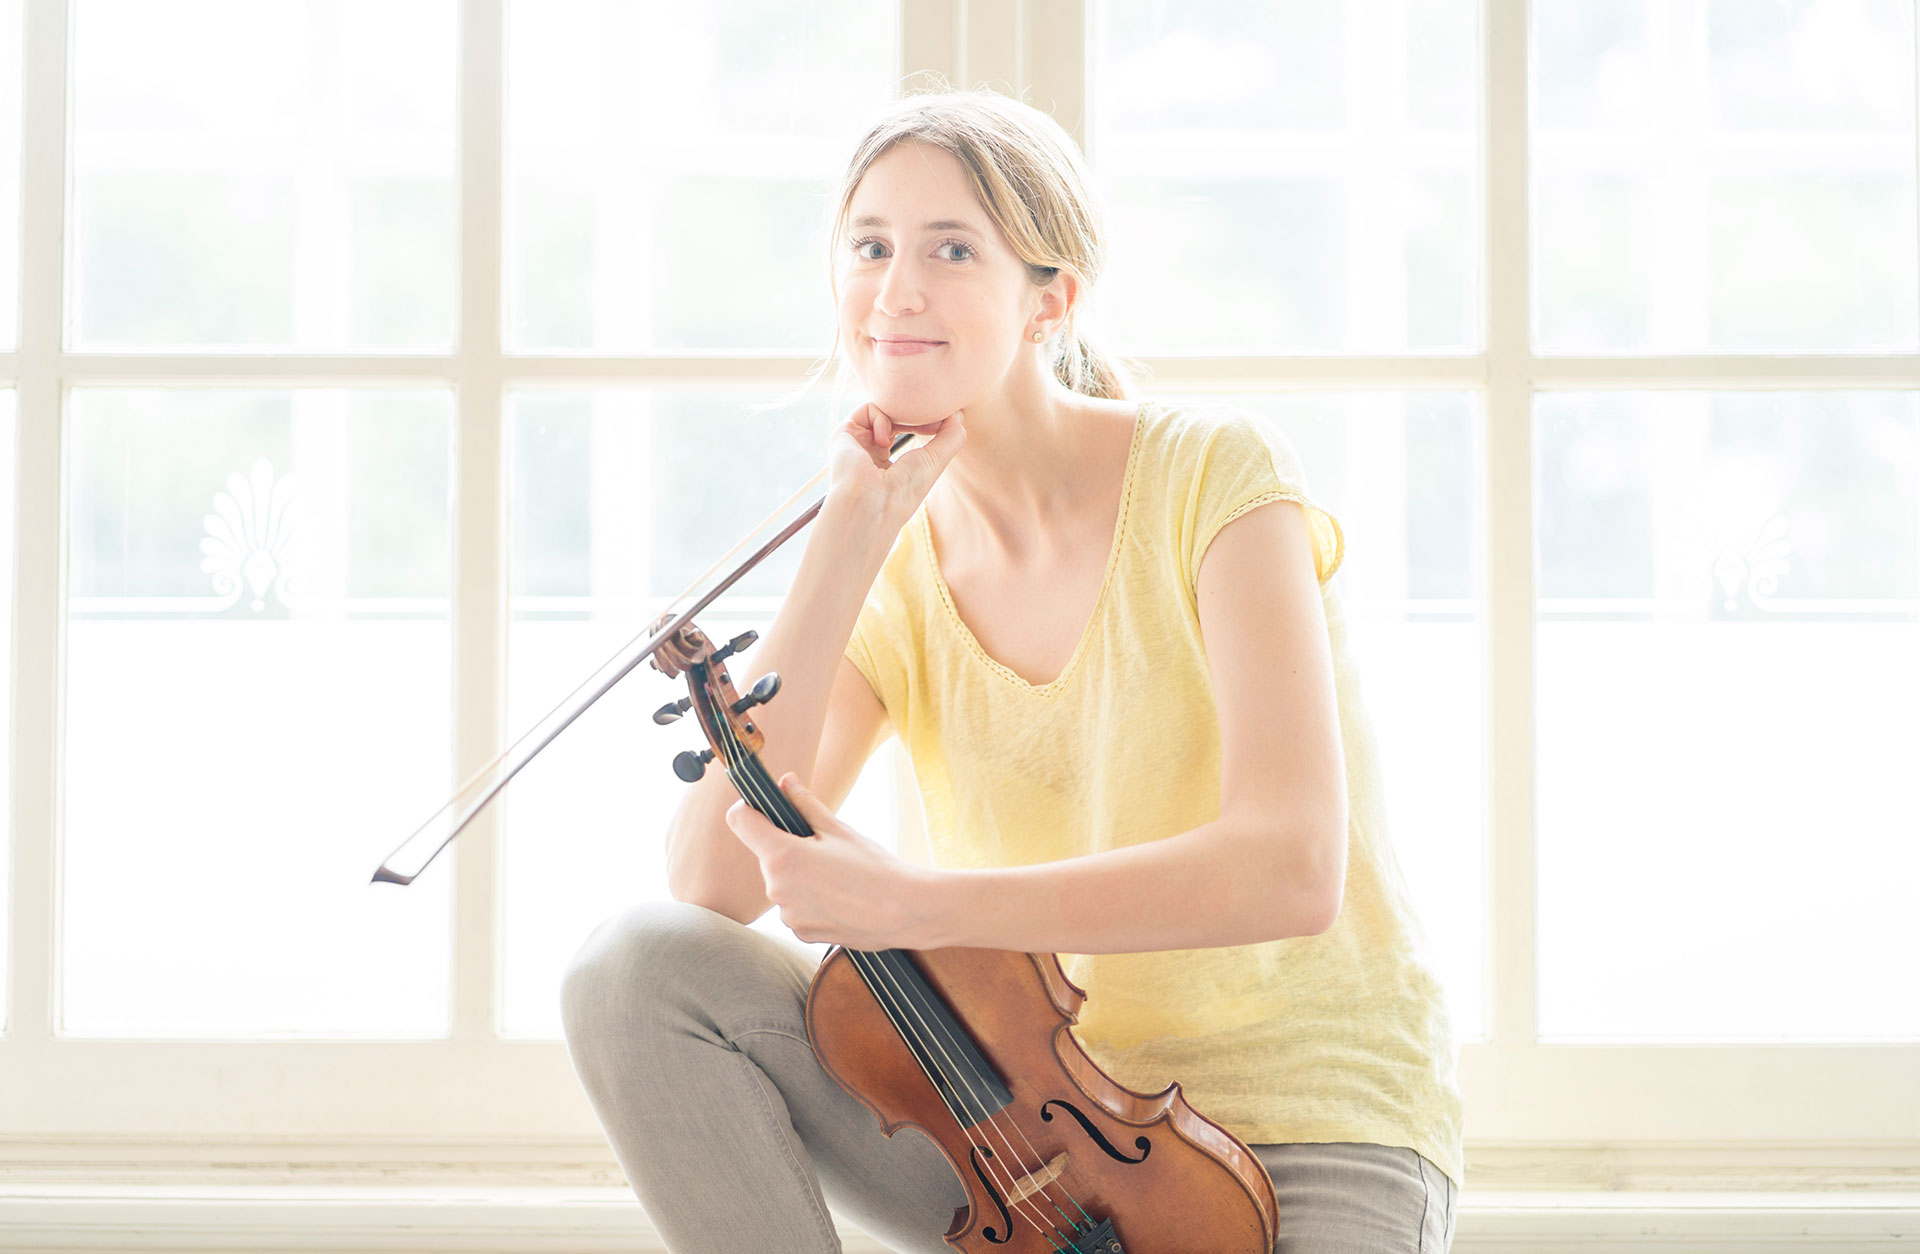 Violinisten Vilde Frang sitter på fönsterbräda, soligt ljus, glad med sitt instrument i handen.